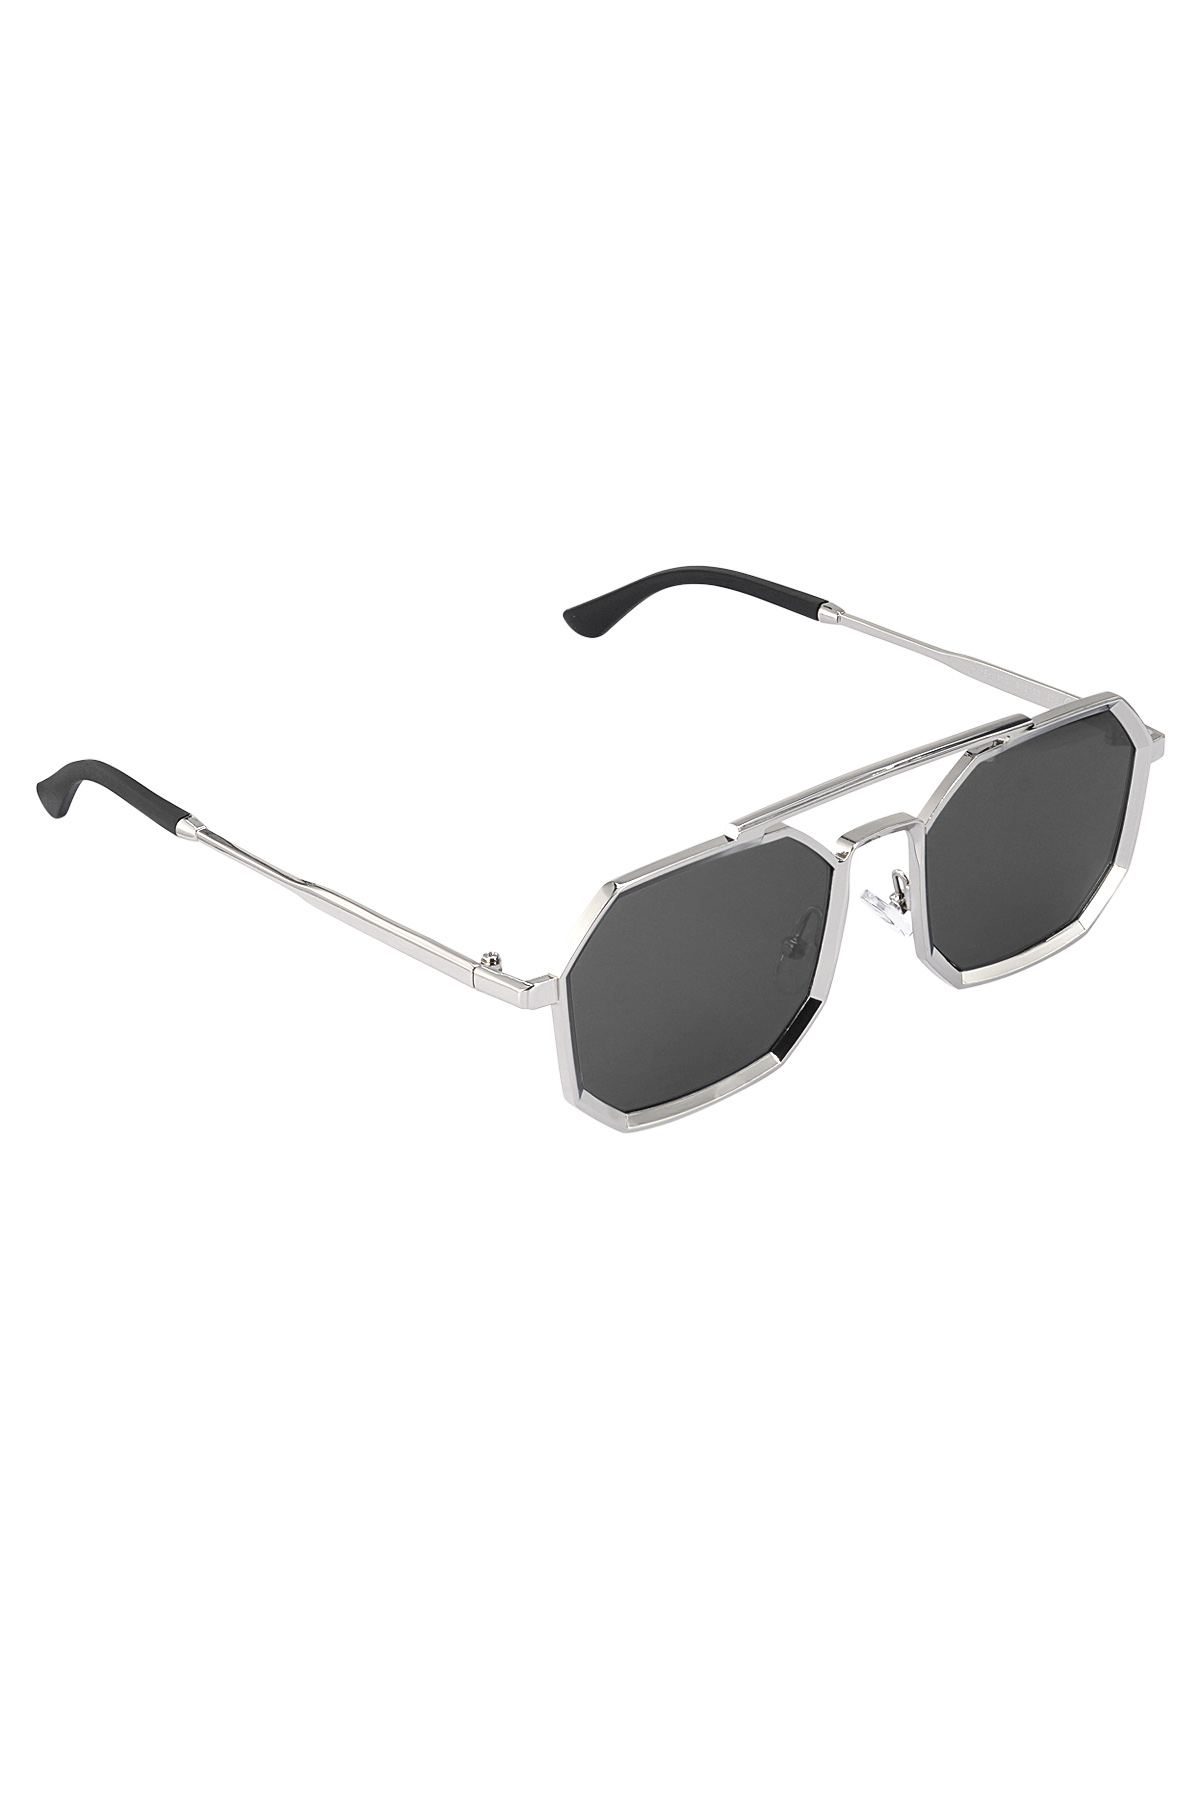 Sonnenbrille LuminLens - schwarz silber